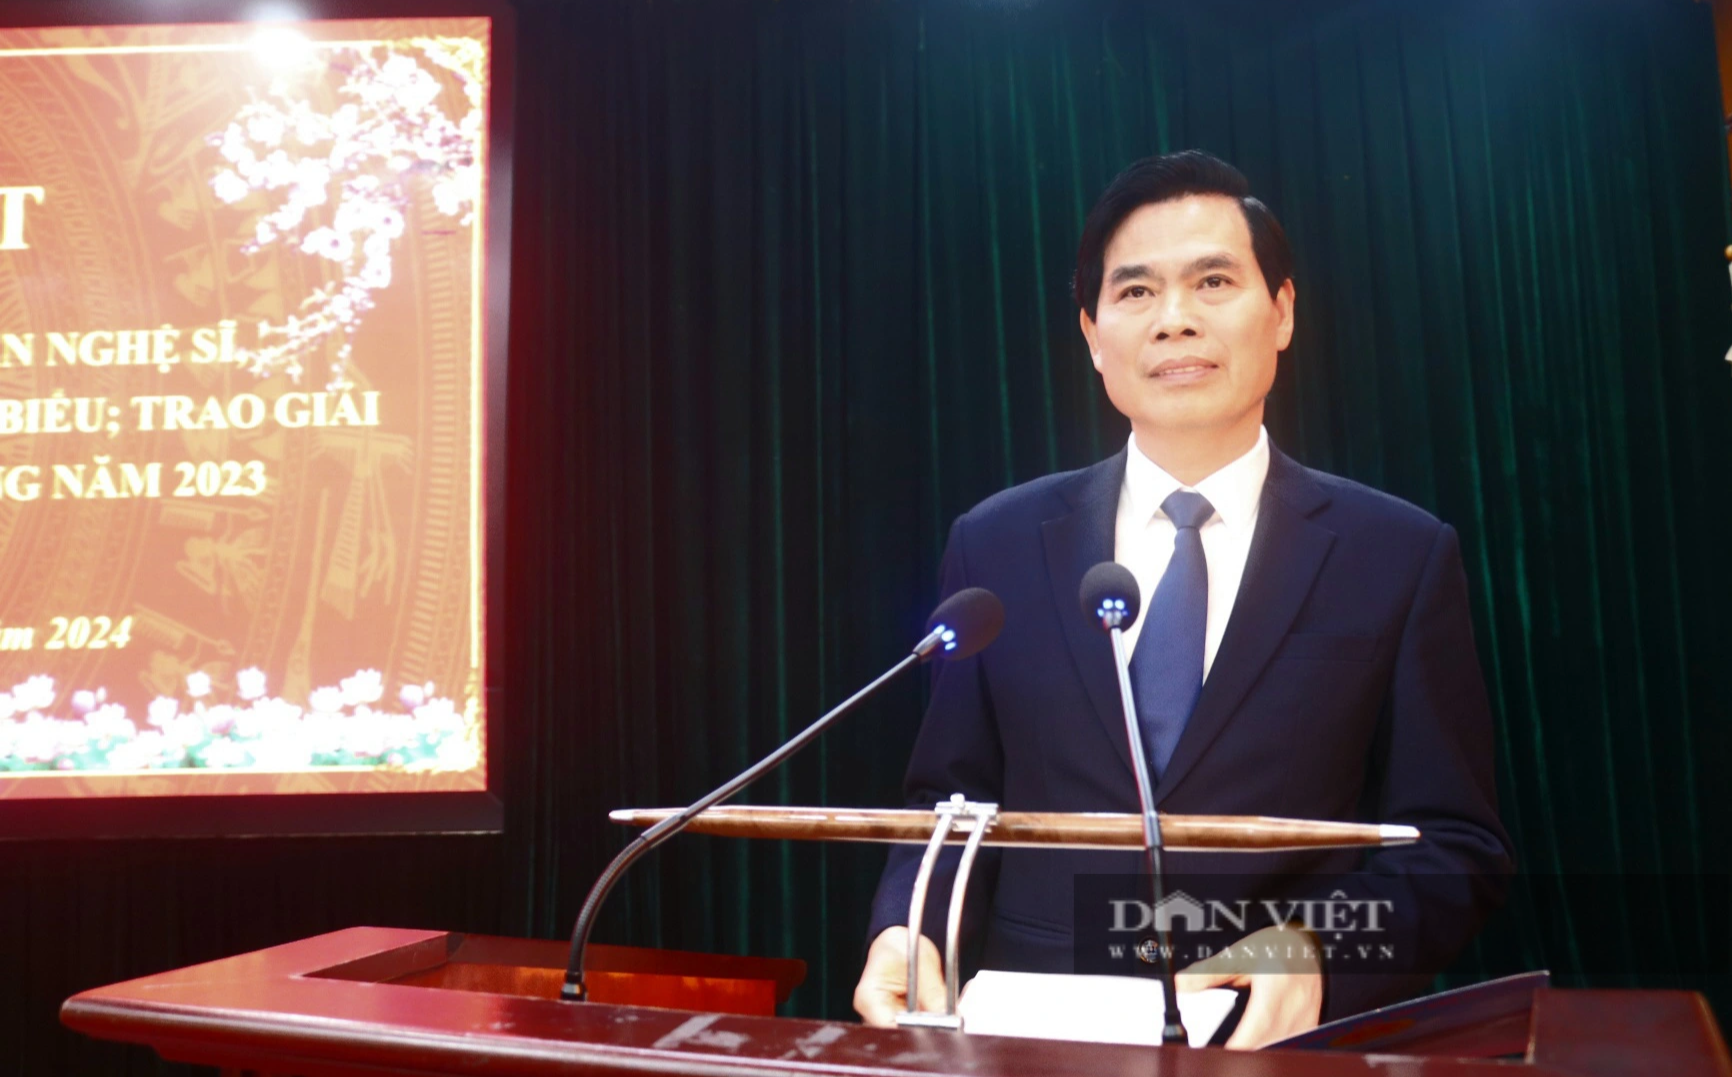 Báo Dân Việt đoạt 2 Giải Báo chí về xây dựng Đảng tỉnh Sơn La năm 2023- Ảnh 4.